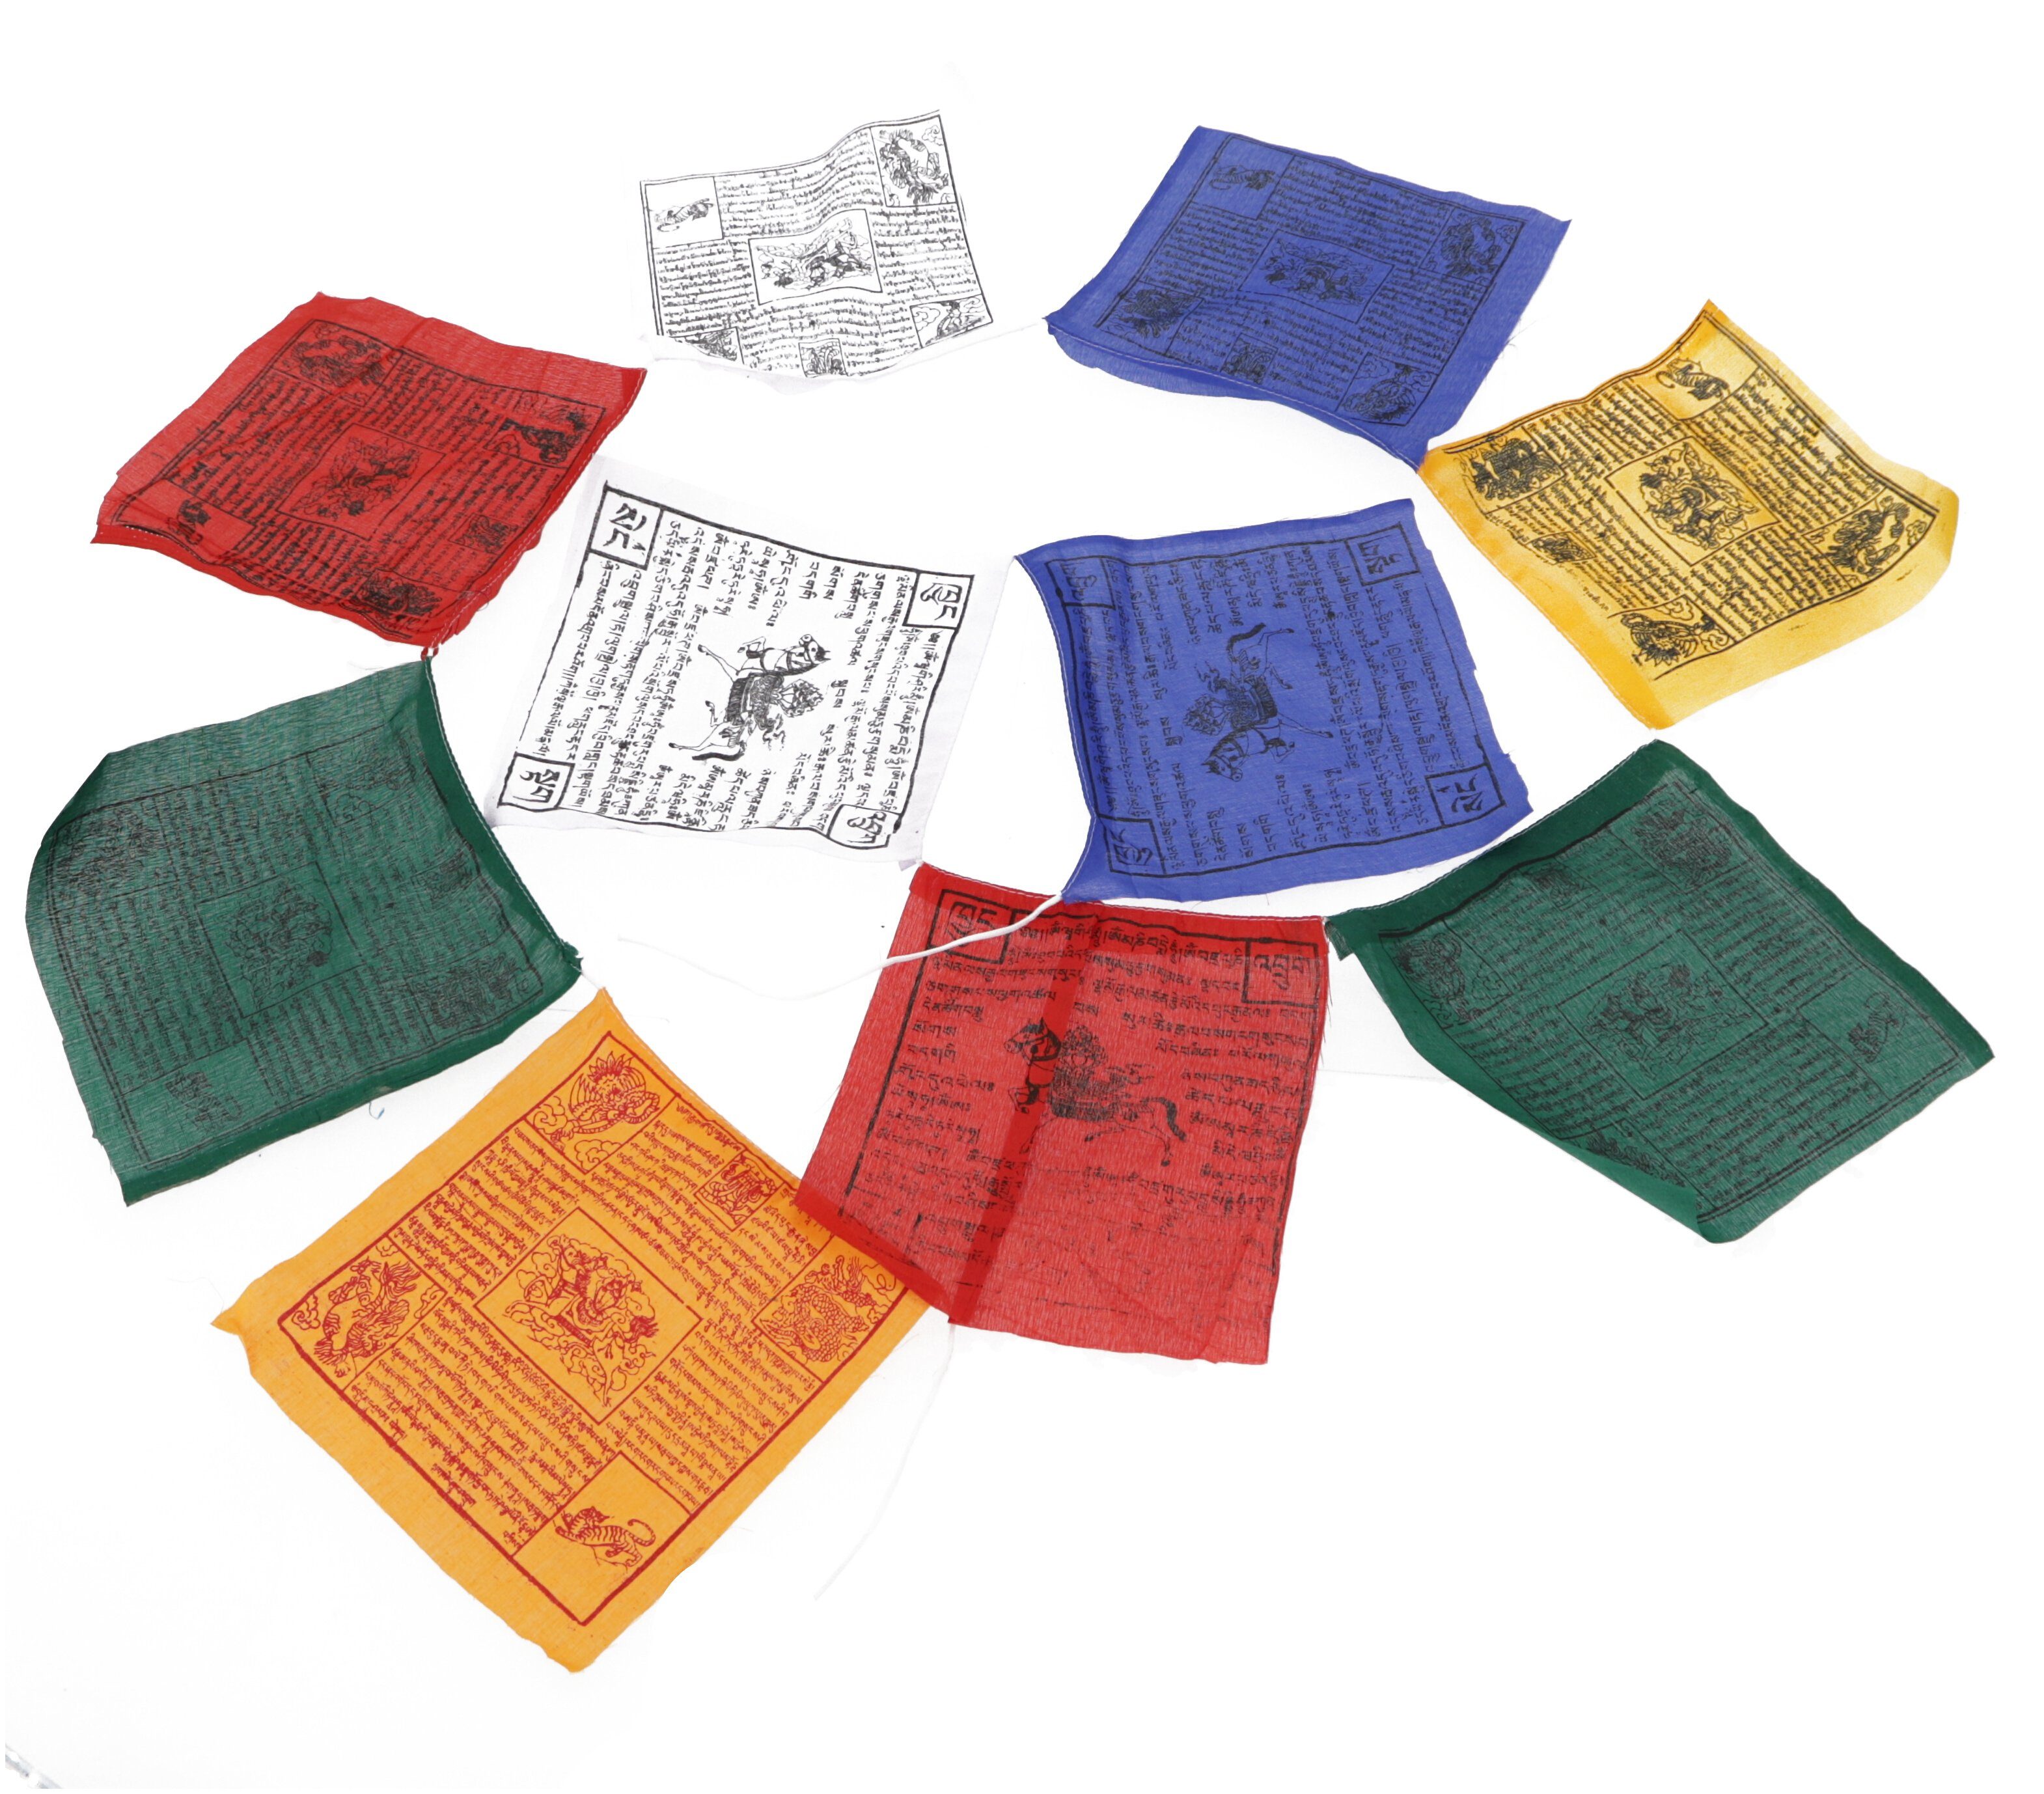 Guru-Shop Wimpelkette Gebetsfahnen (Tibet) 1,50 12*12 Sparpack.. m Stück (wimpel lang 5 cm)